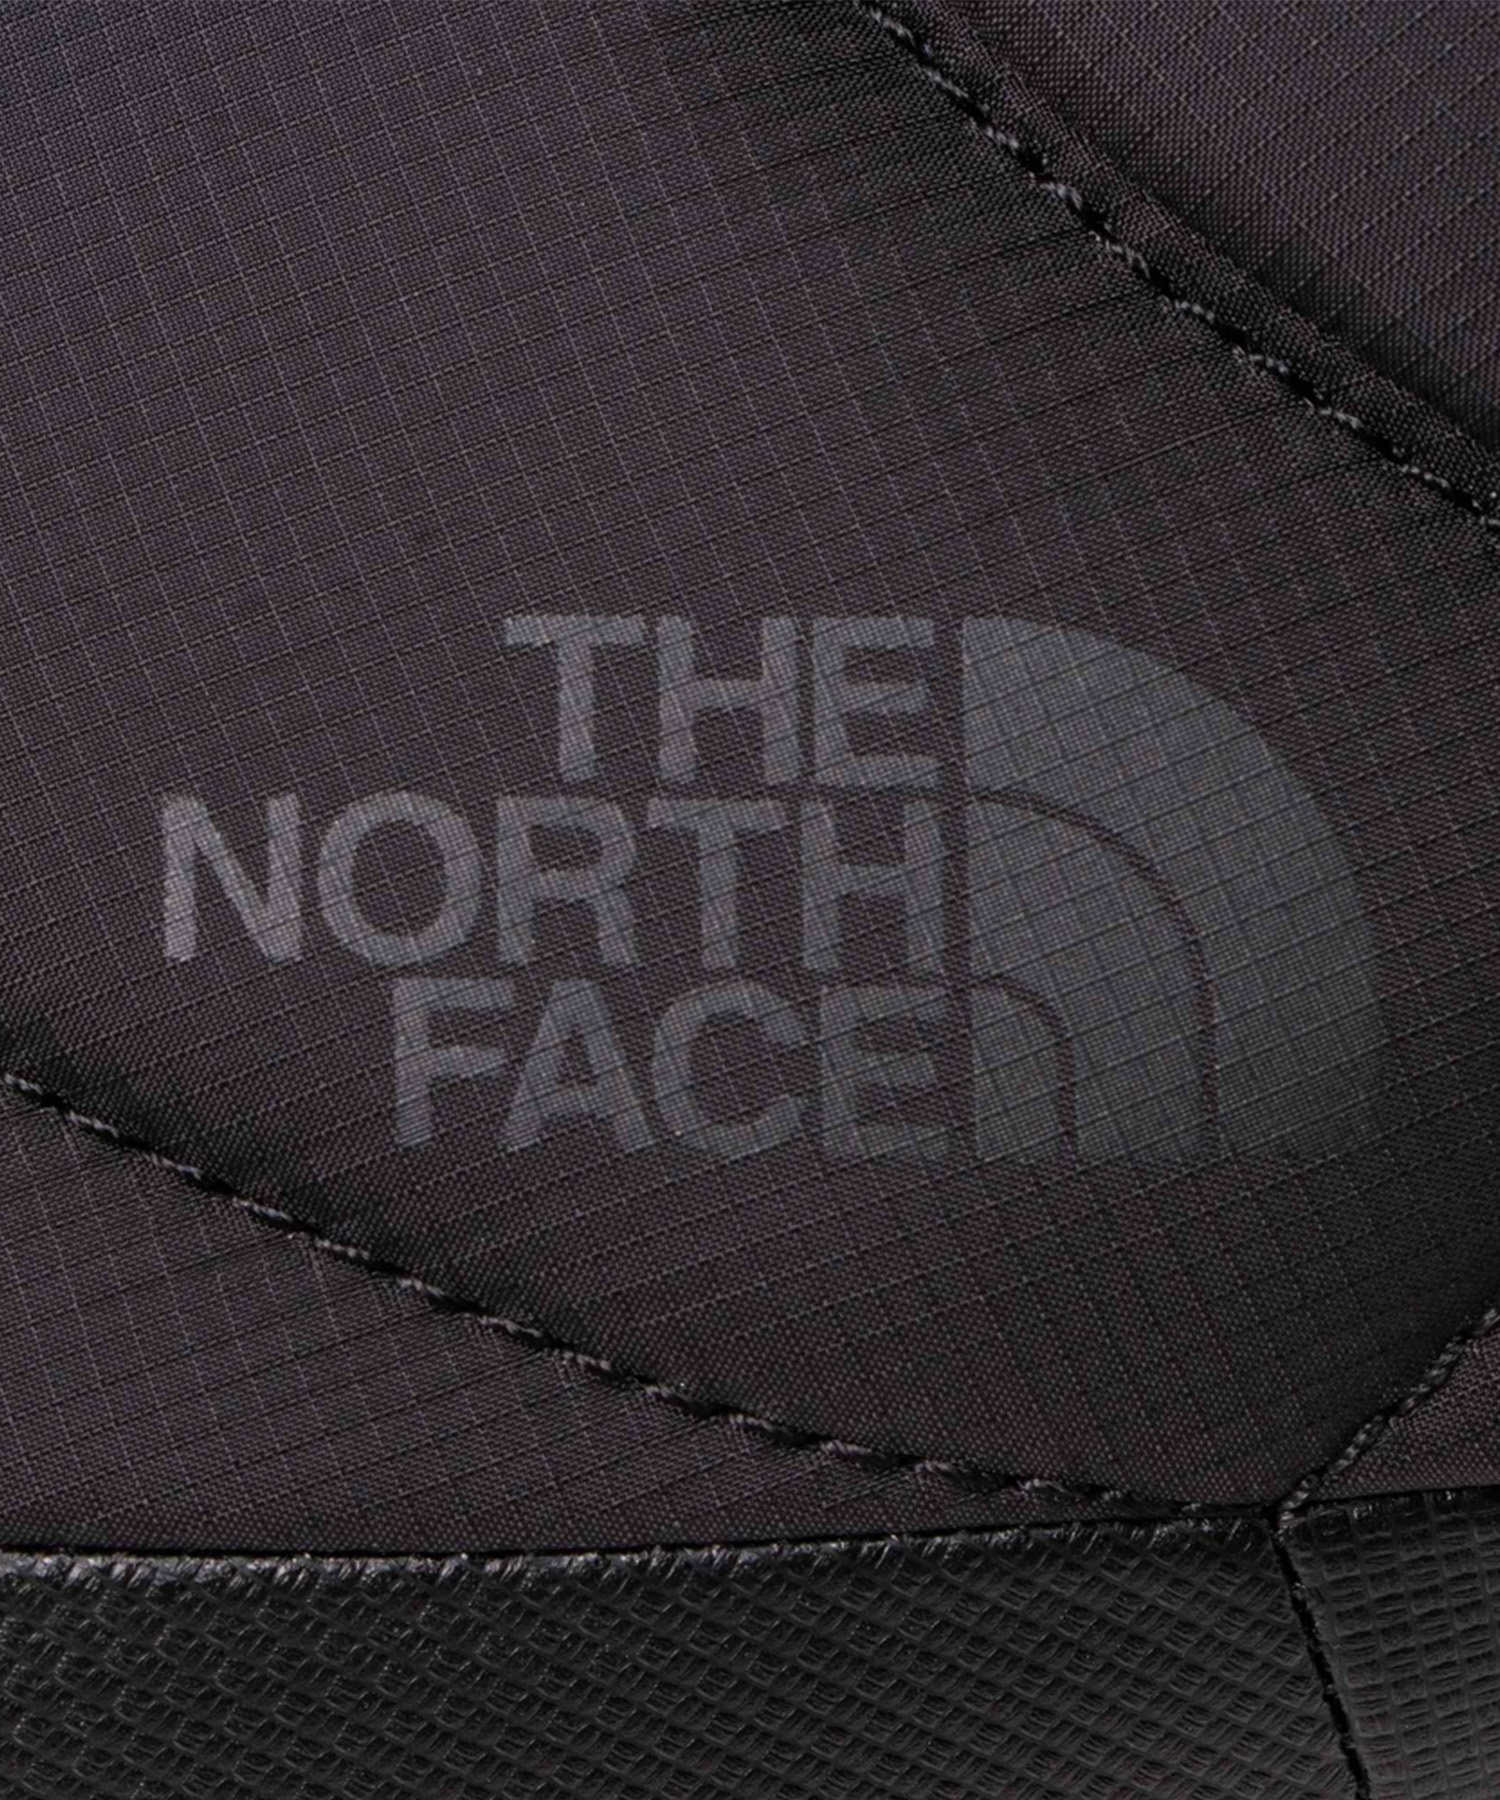 THE NORTH FACE/ザ・ノース・フェイス Nuptse Bootie WP VII ヌプシ ブーティー ウォータープルーフ 7 メンズ ブーツ 防水 防寒 軽量 NF52272 BK(BK-23.0cm)